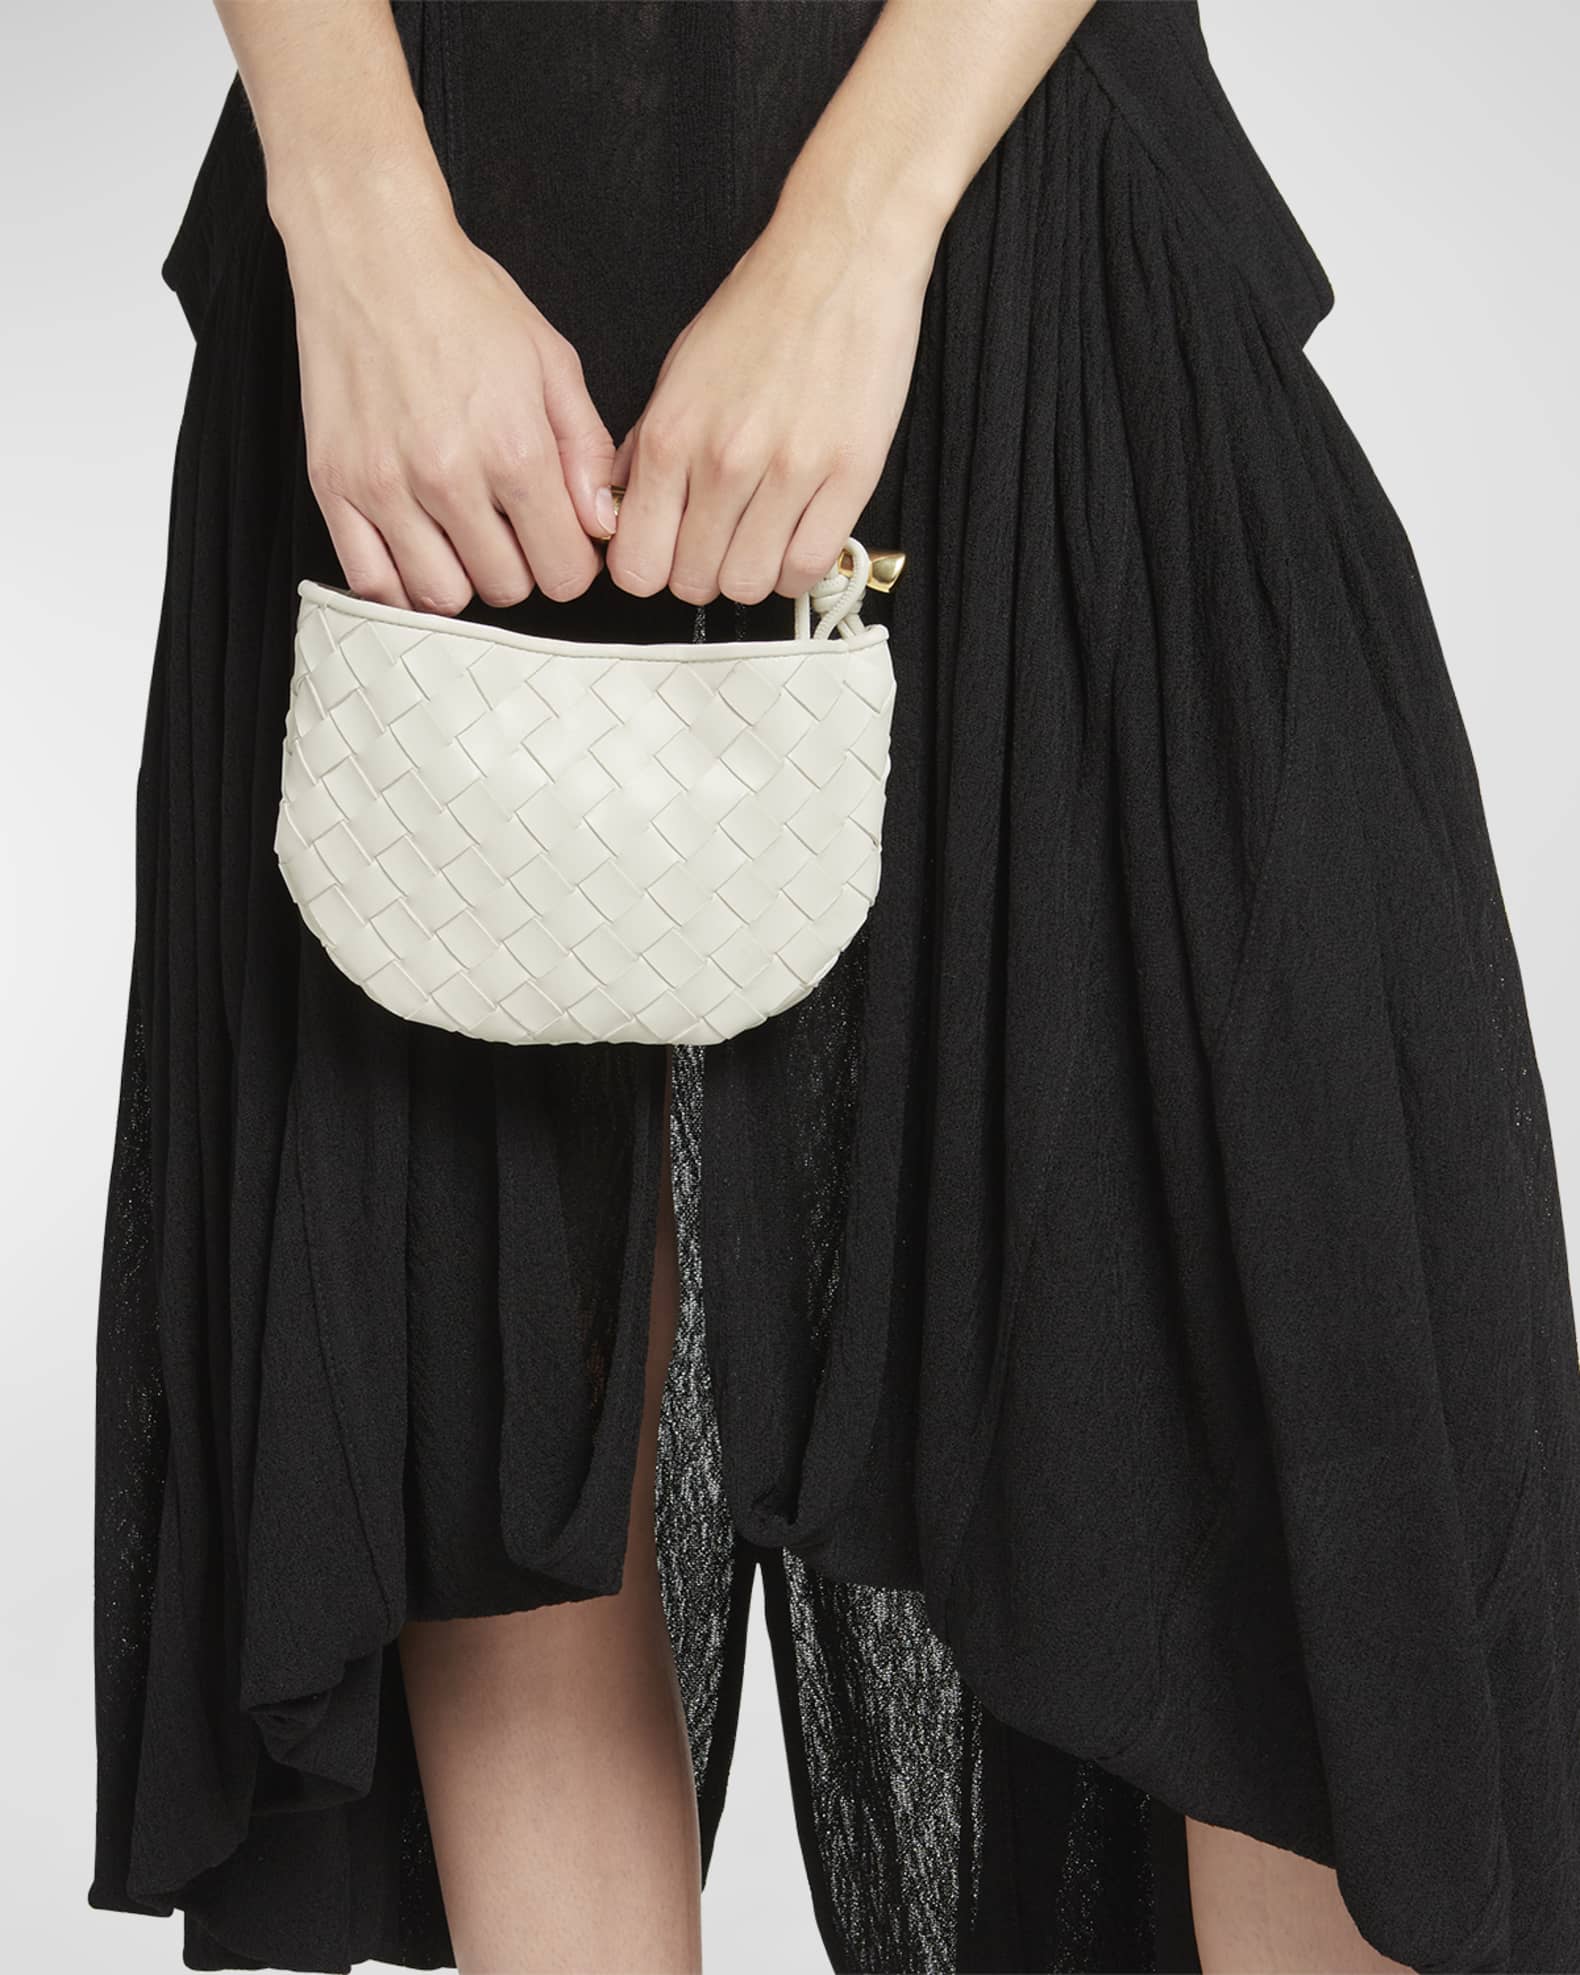 Most wanted: Bottega Veneta's Sardine bag - Neiman Marcus